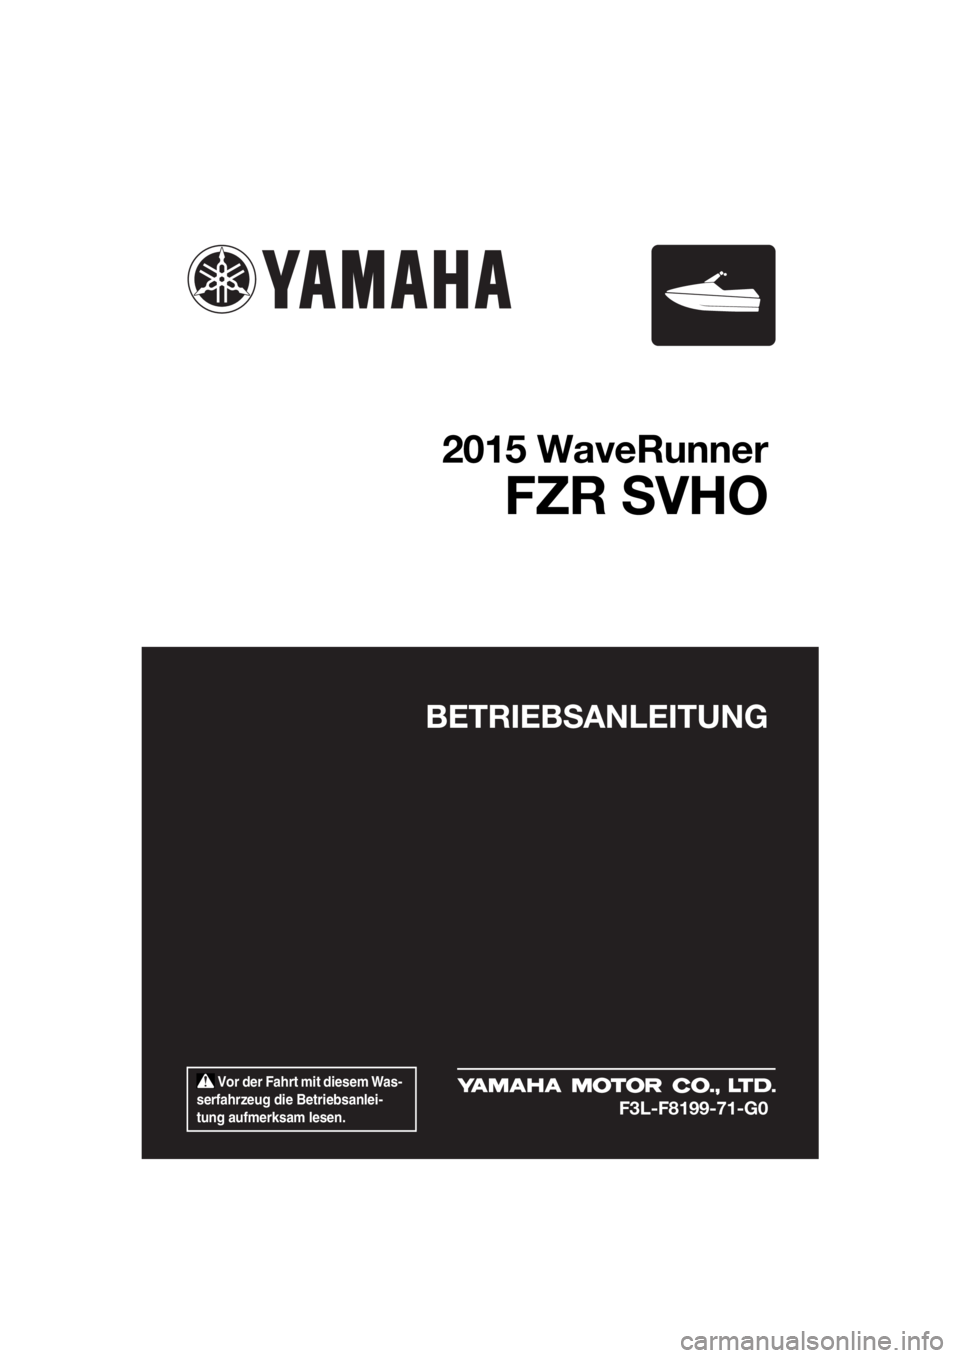 YAMAHA FZR 2015  Betriebsanleitungen (in German)  Vor der Fahrt mit diesem Was-
serfahrzeug die Betriebsanlei-
tung aufmerksam lesen.
BETRIEBSANLEITUNG
2015 WaveRunner
FZR SVHO
F3L-F8199-71-G0
UF3L71G0.book  Page 1  Friday, June 20, 2014  2:19 PM 